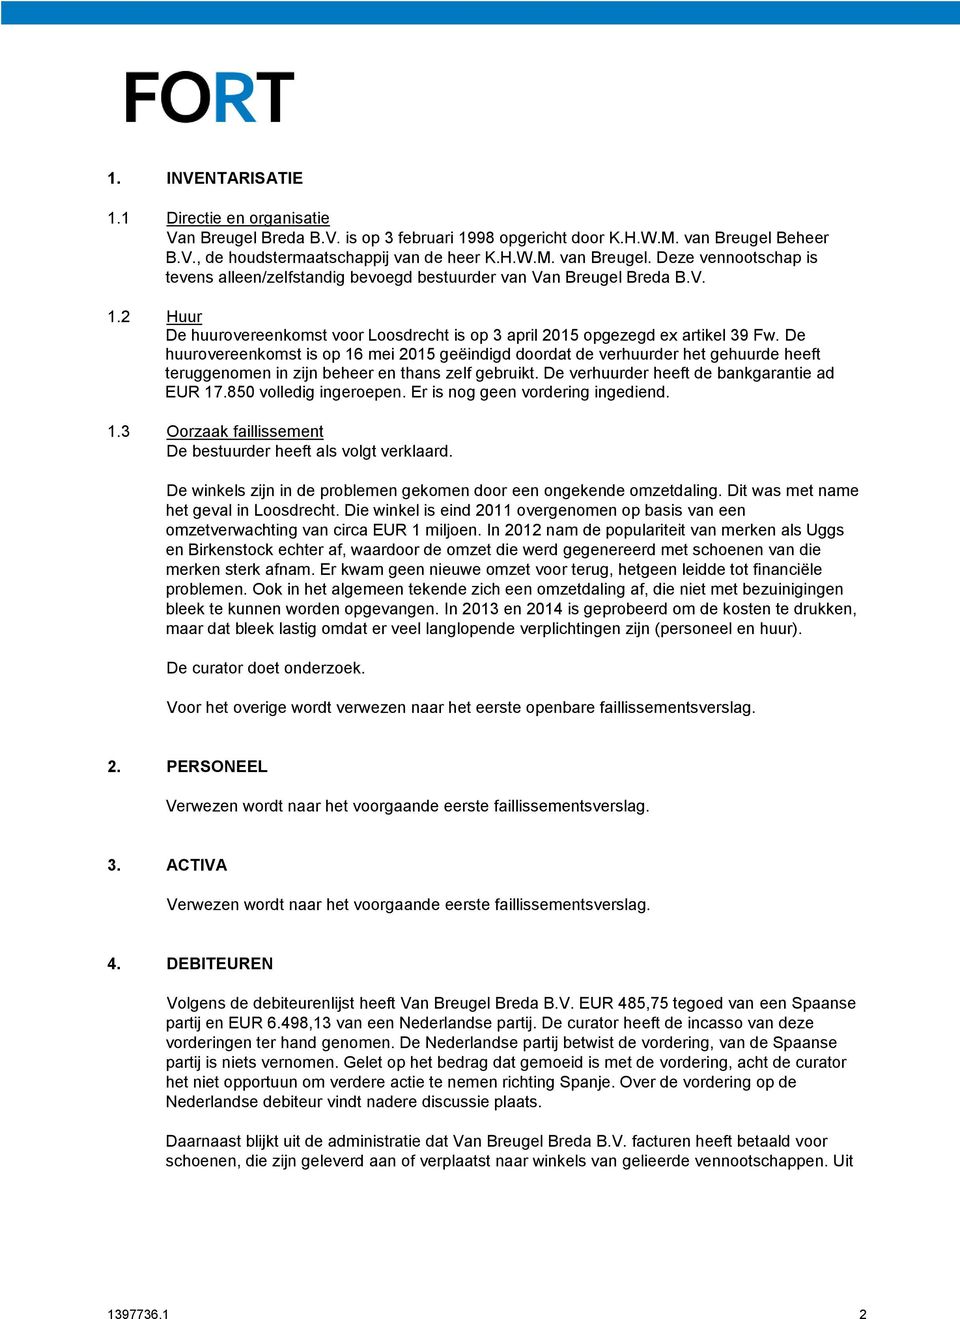 2 Huur De huurovereenkomst voor Loosdrecht is op 3 april 2015 opgezegd ex artikel 39 Fw.